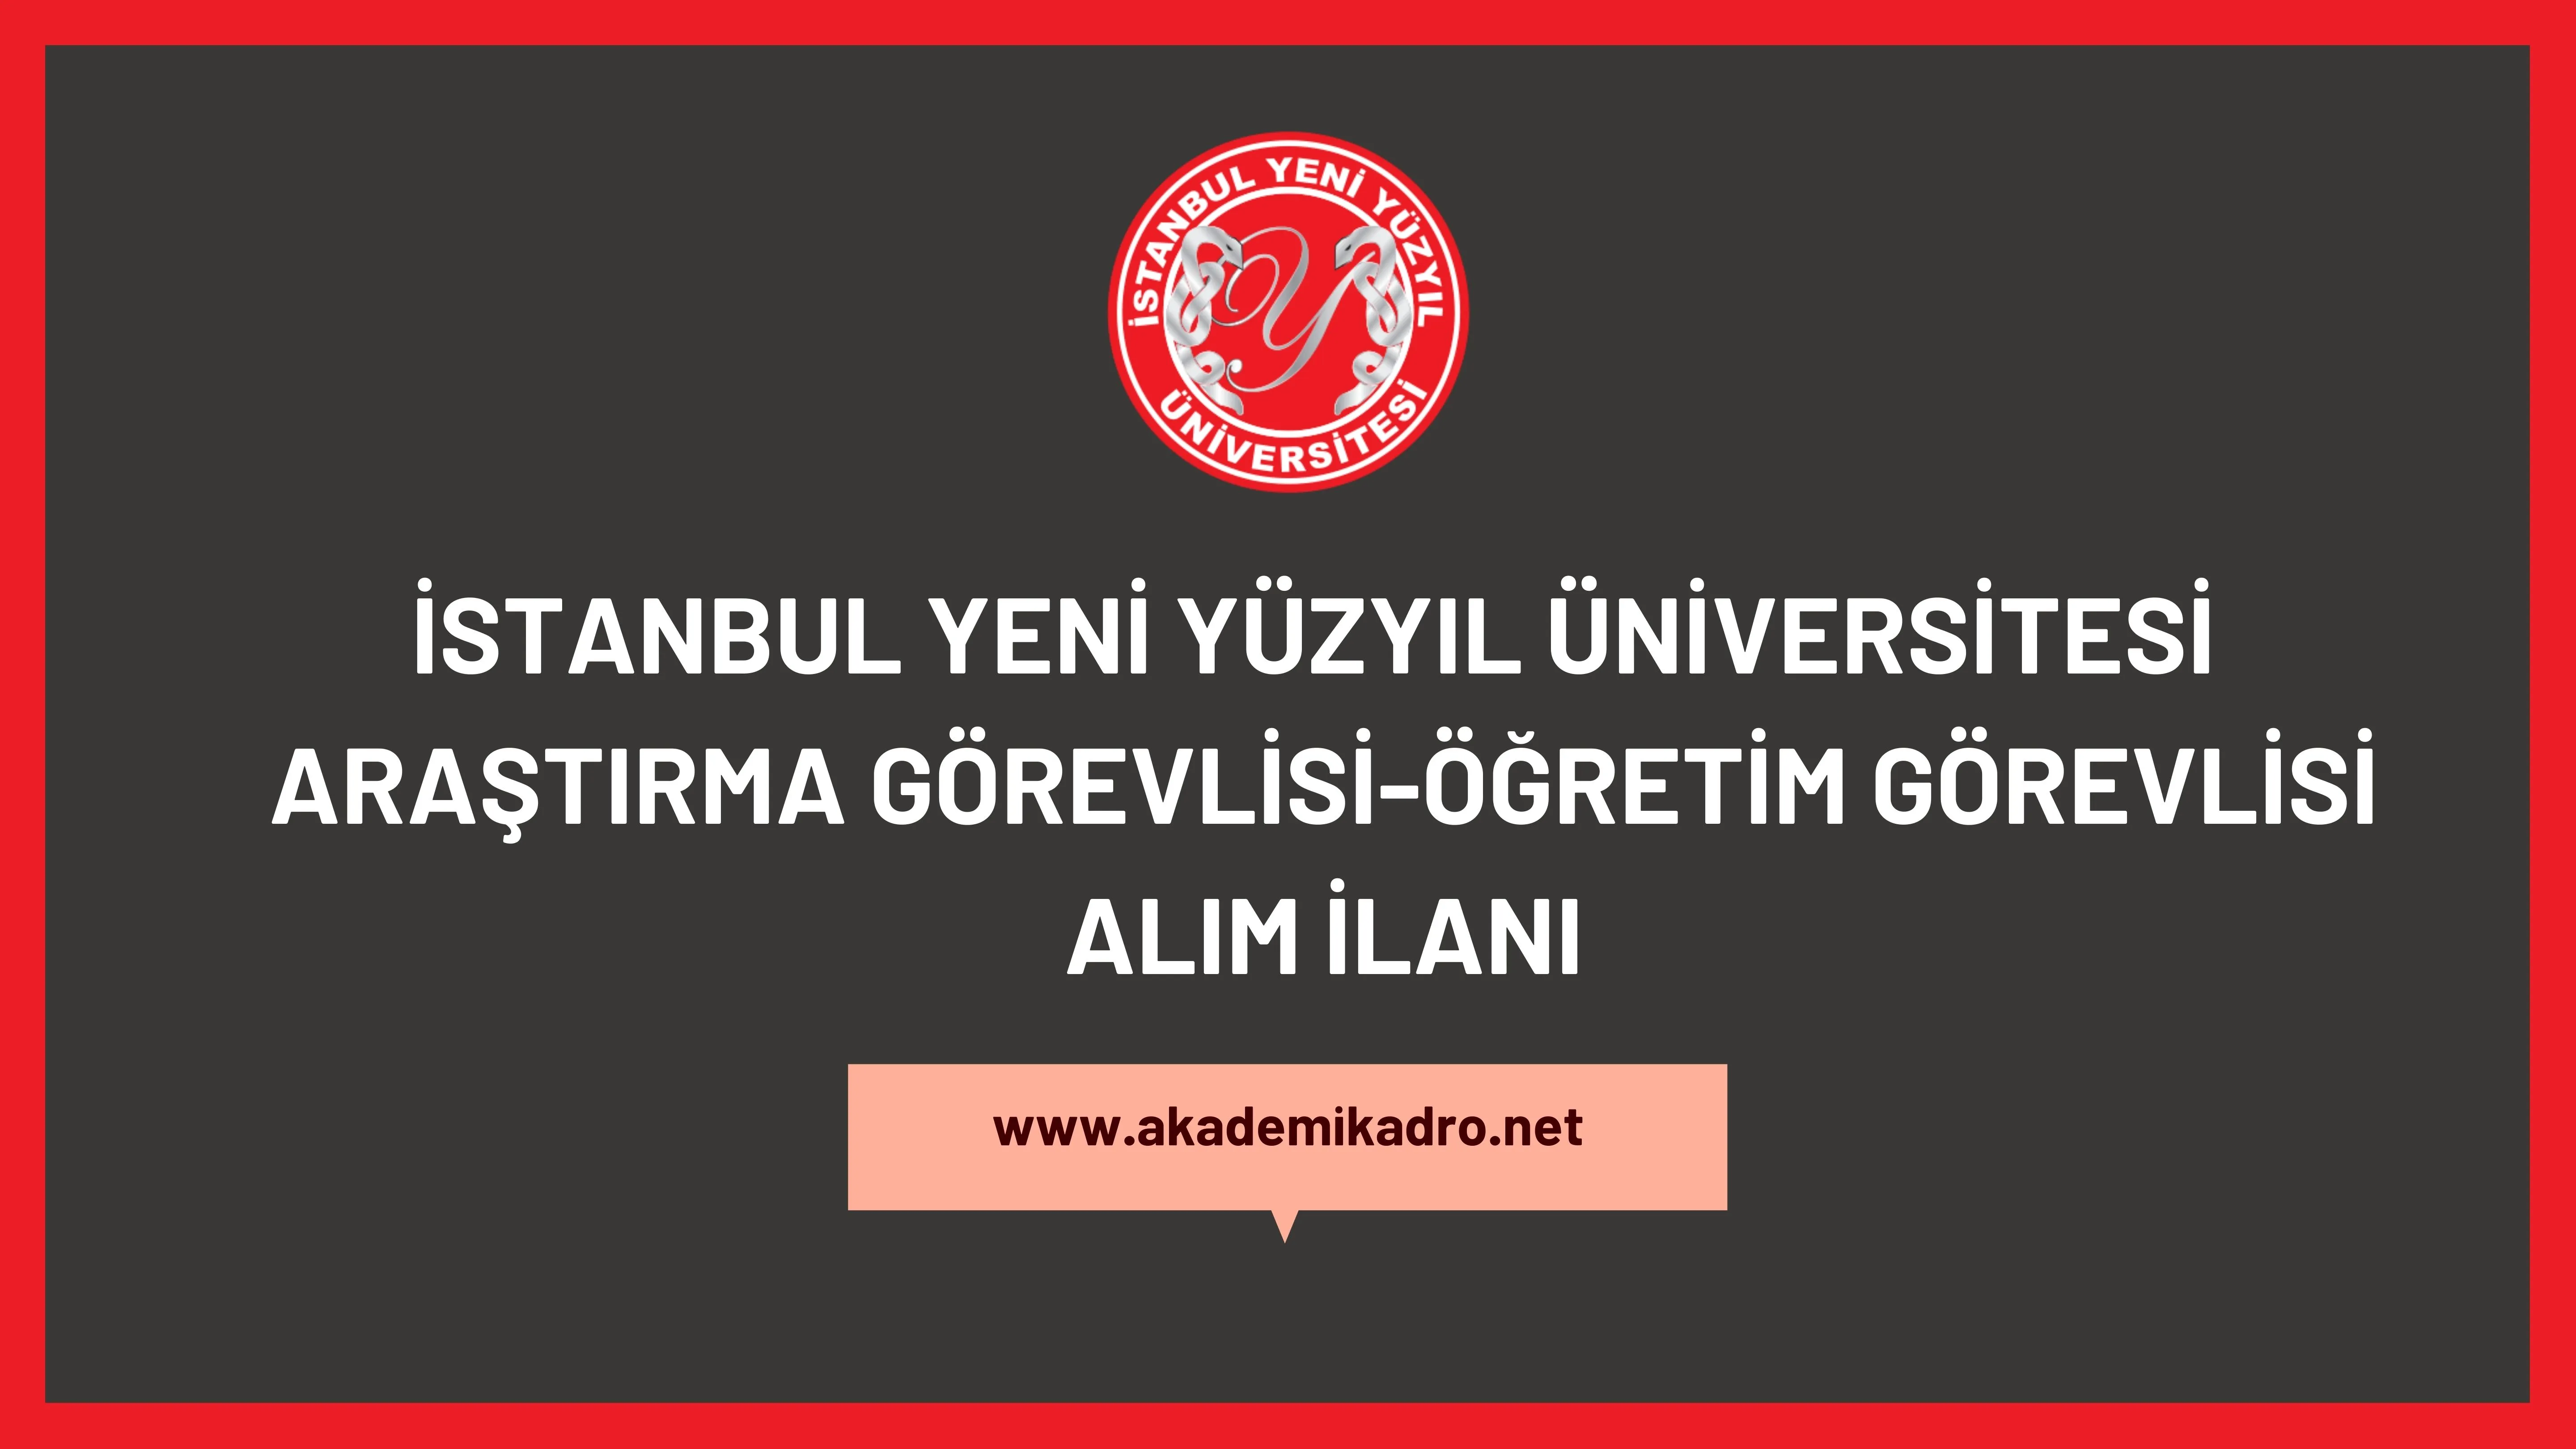 İstanbul Yeni Yüzyıl Üniversitesi 3 Öğretim görevlisi, 2 Araştırma görevlisi ve 8 Öğretim elemanı alacaktır.